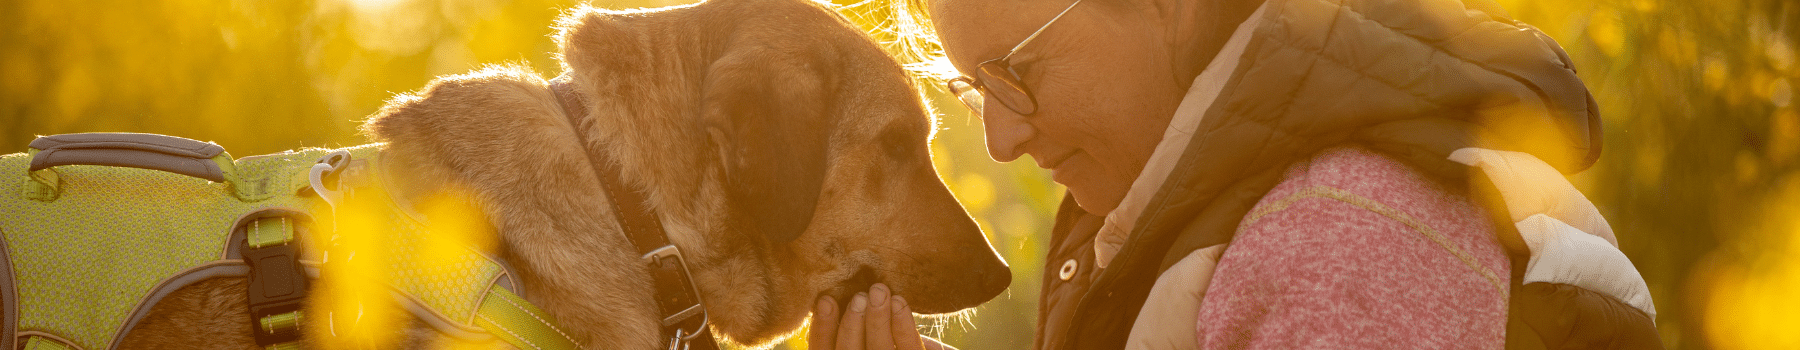 Hunde vertrauen Silke Ritthaler. Sie kennt die richtige Körpersprache, die ein Leithund kommuniziert.